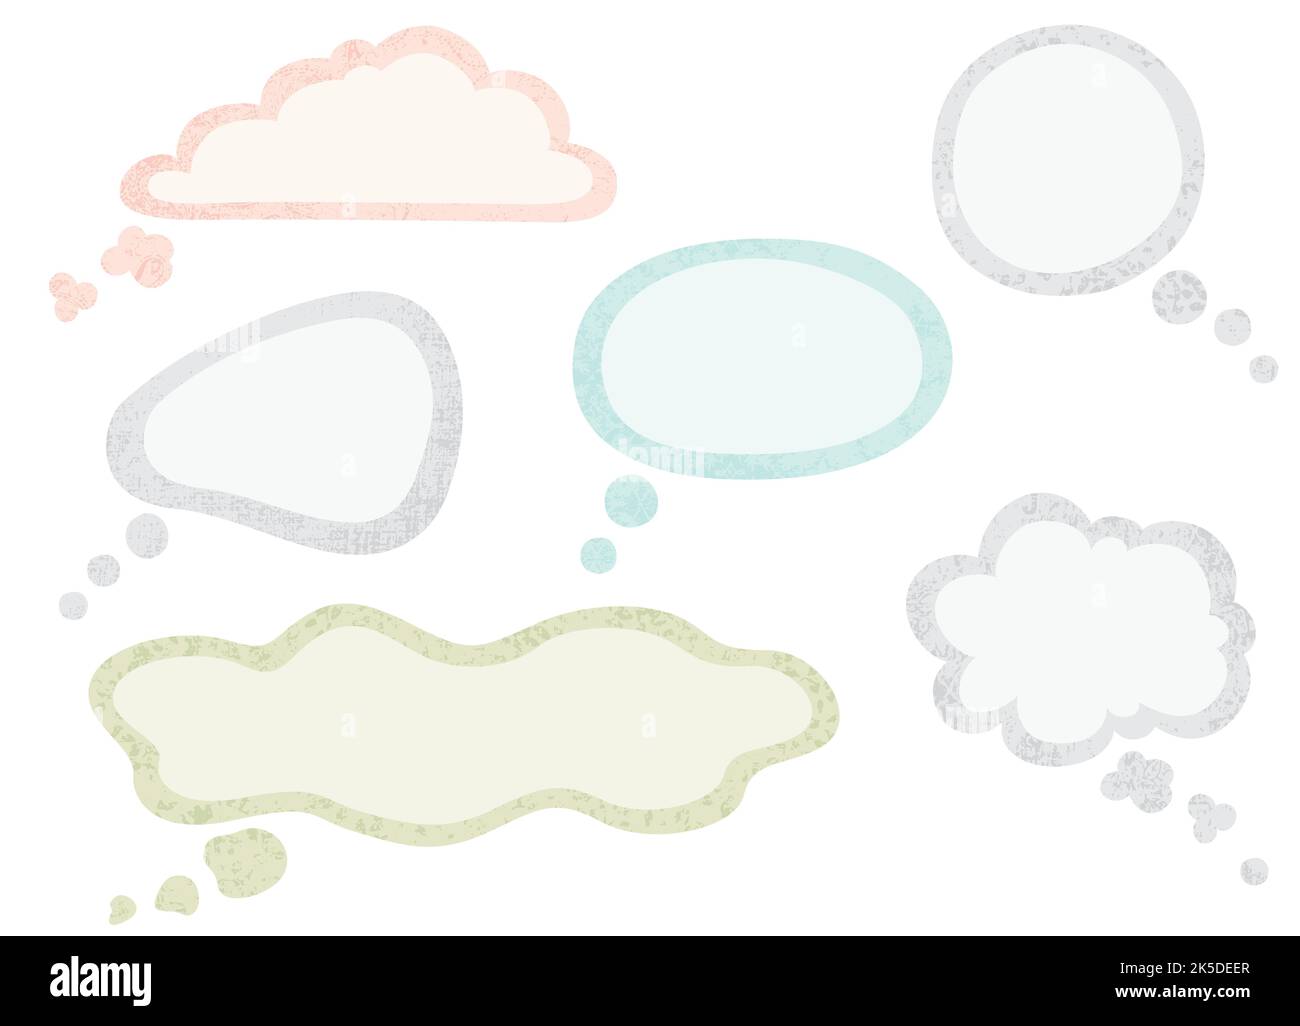 Un ensemble de différentes bulles de pensée dans un style de papier coupé avec des textures Illustration de Vecteur